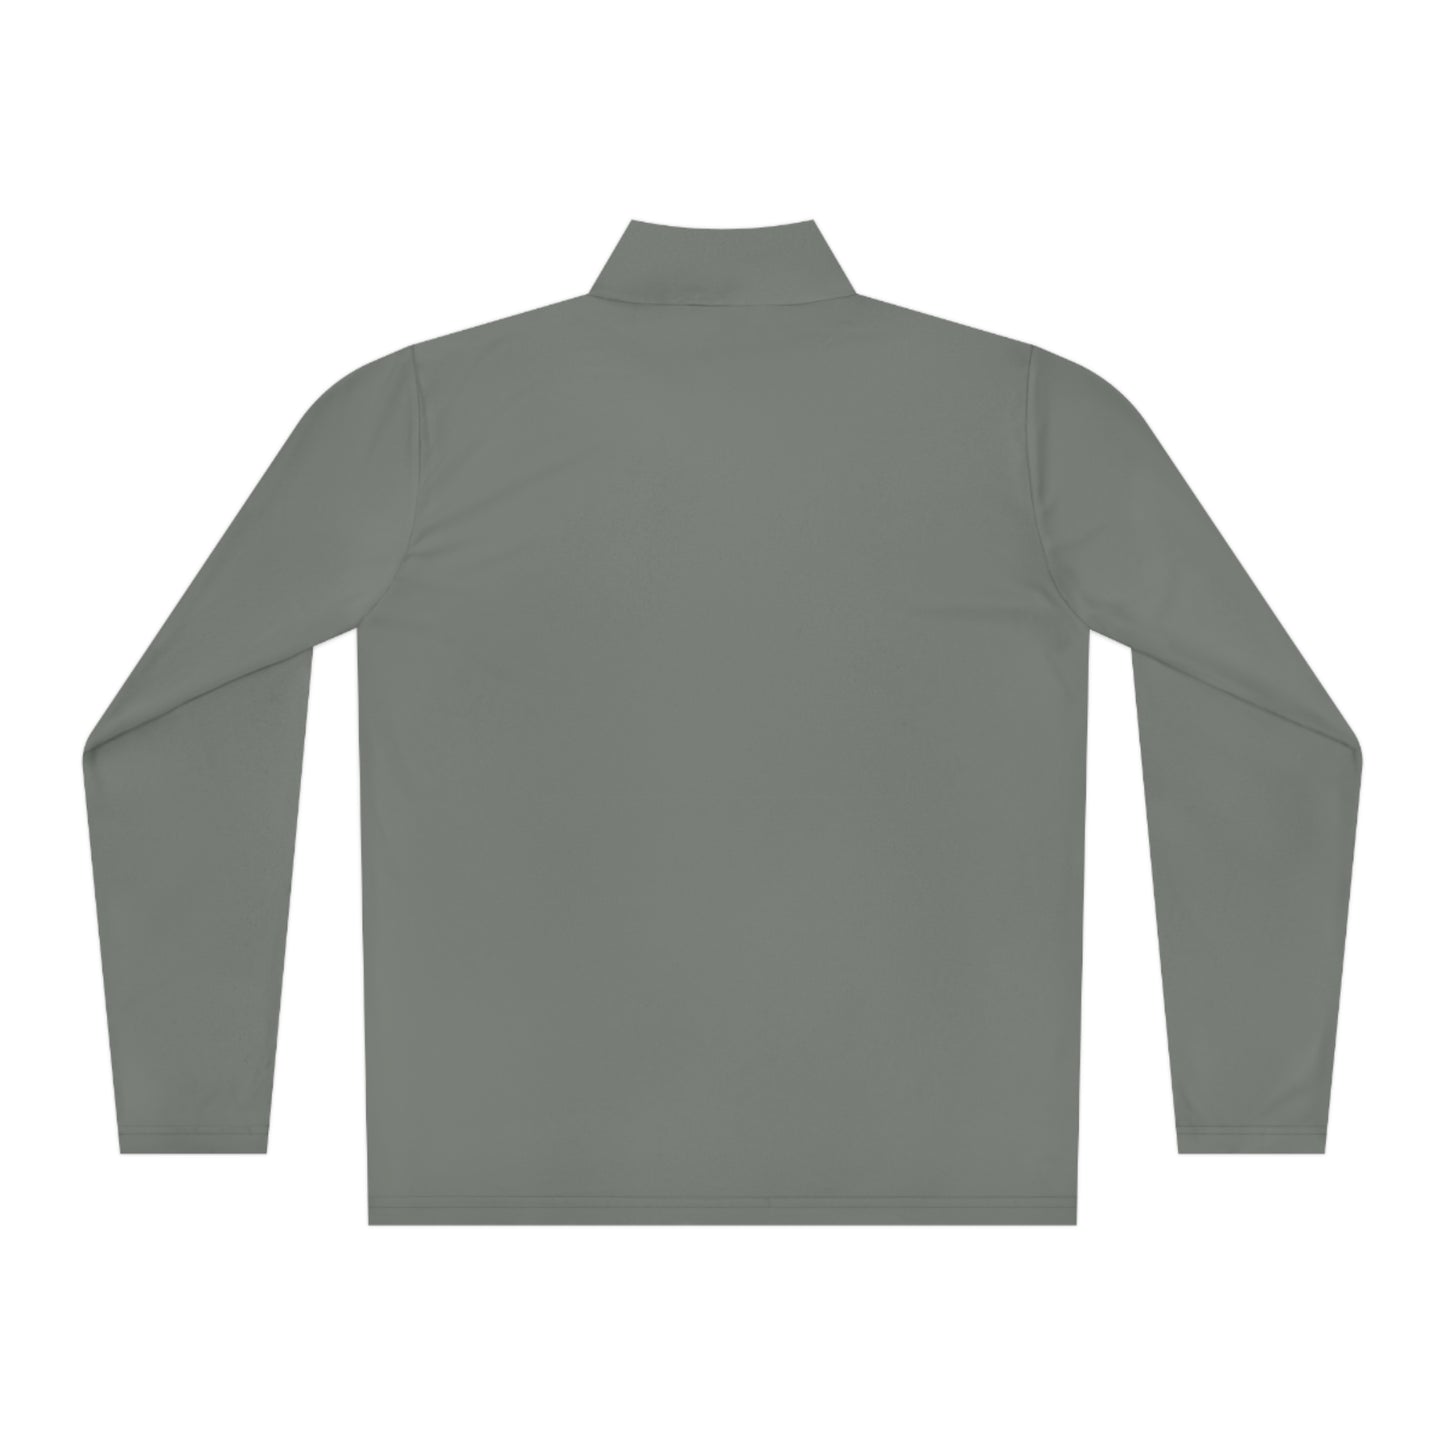 Unisex SCR Quarter-Zip Pullover